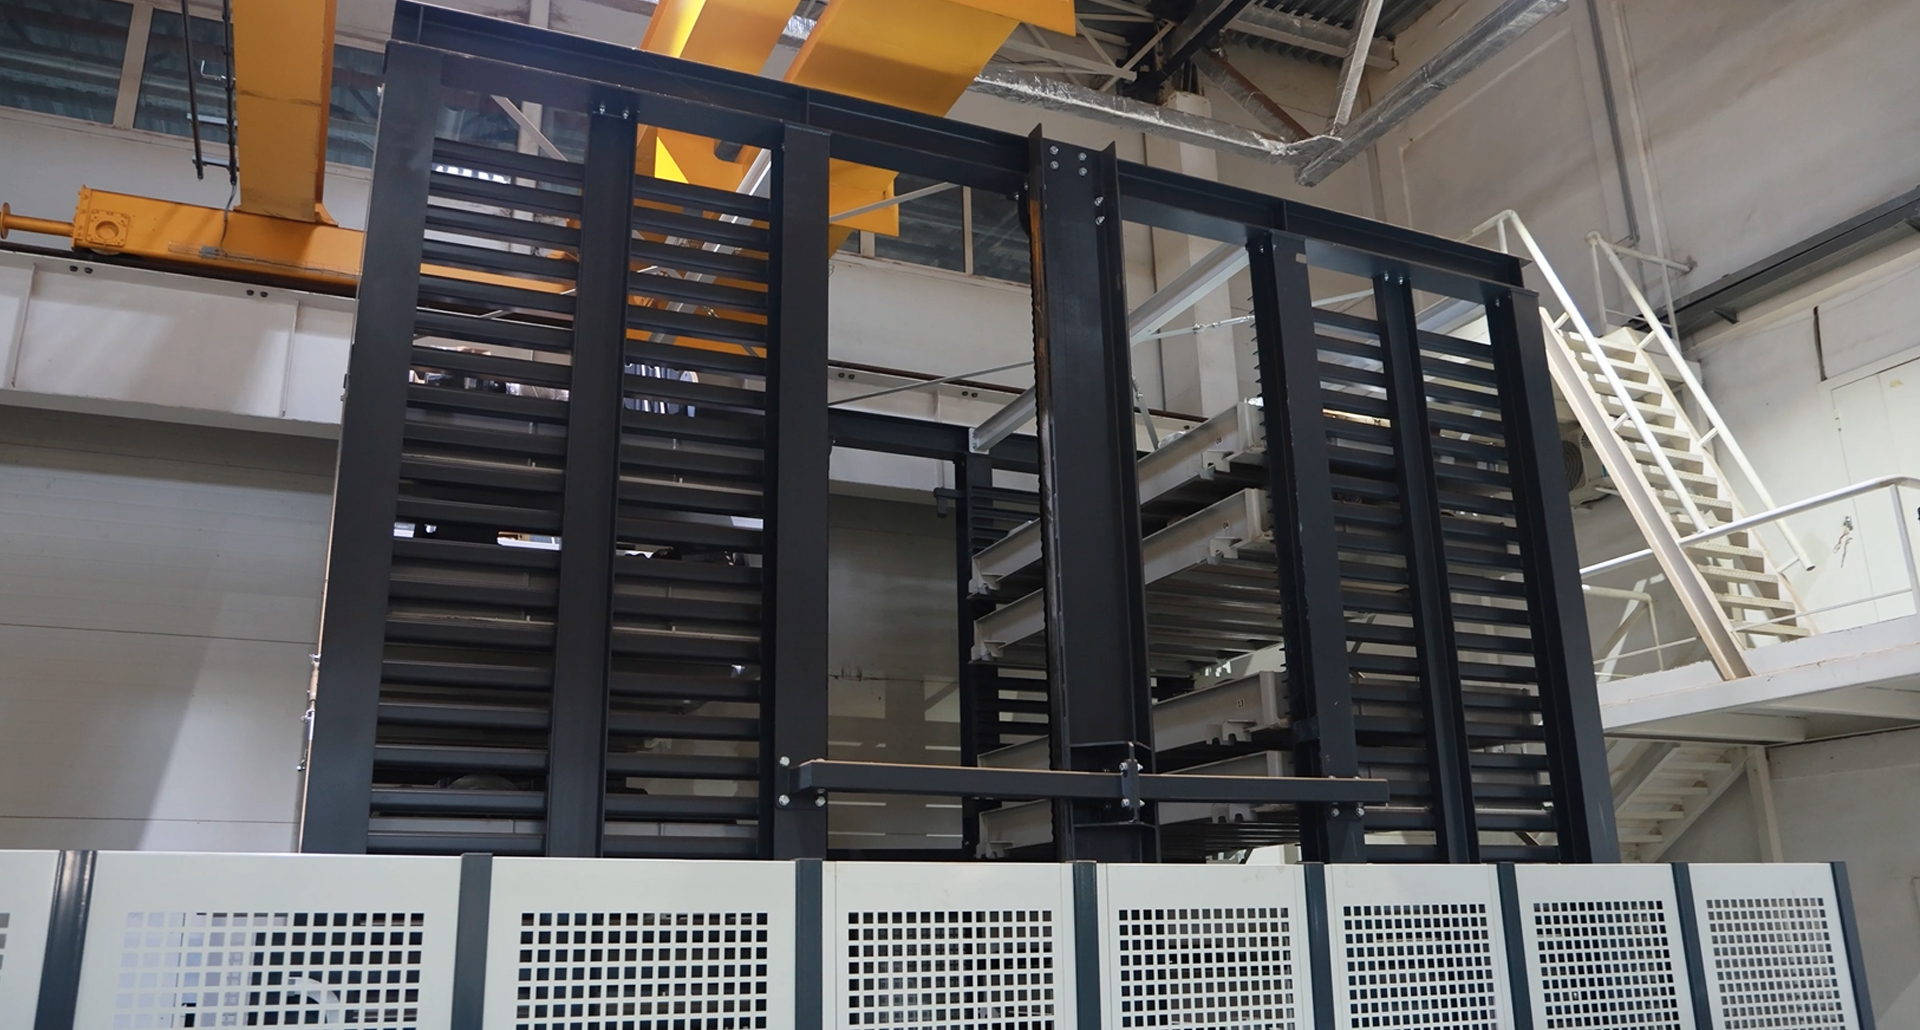 Конструкция склада Heavy Lift позволяет хранить многотонные грузы